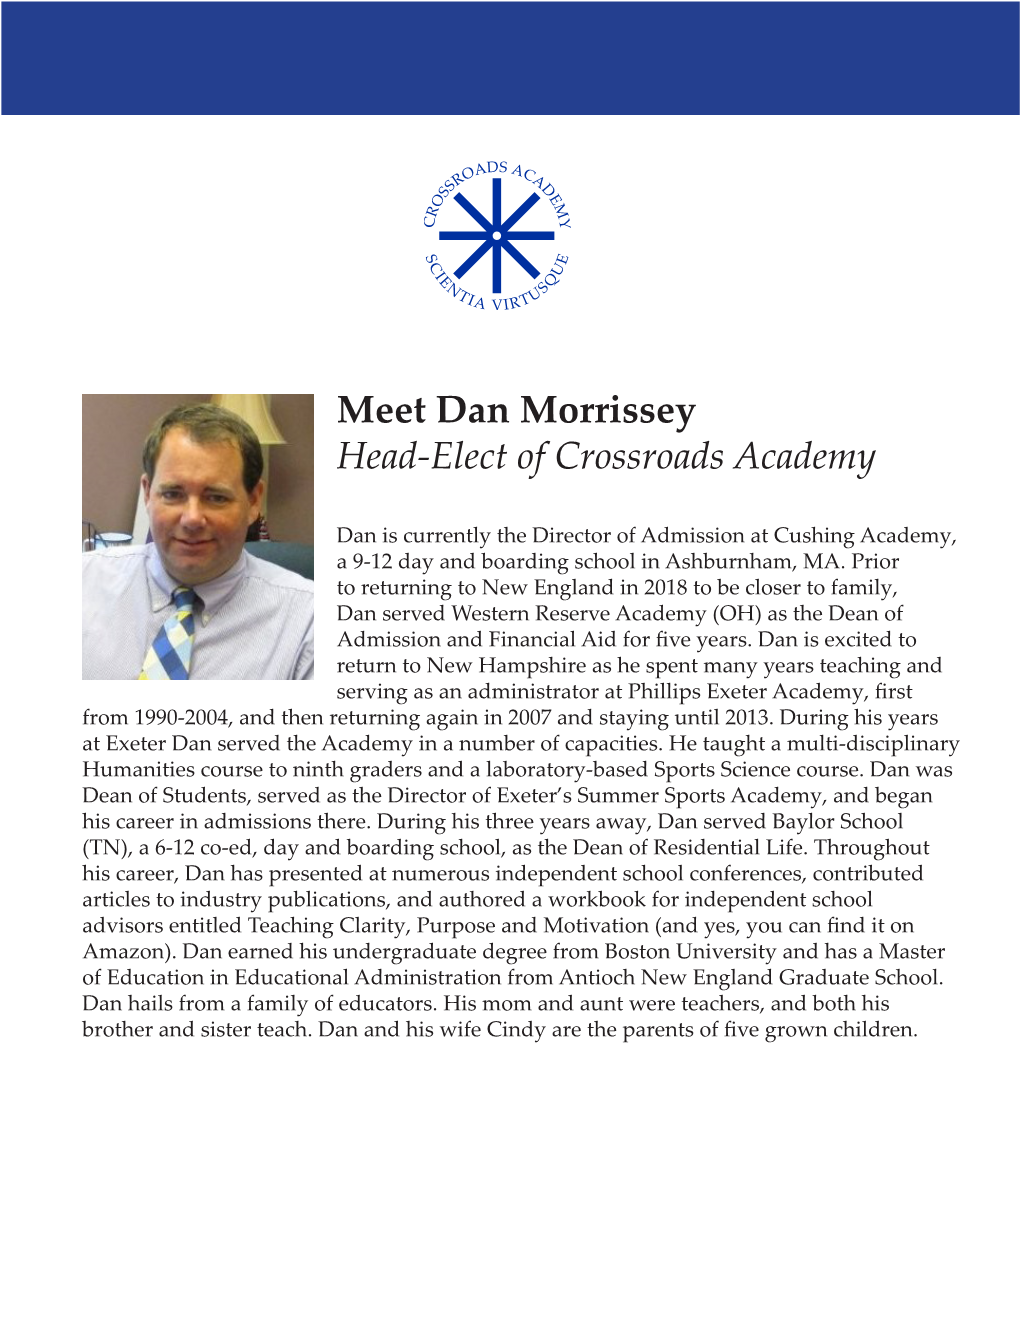 Meet Dan Morrissey Head-Elect of Crossroads Academy